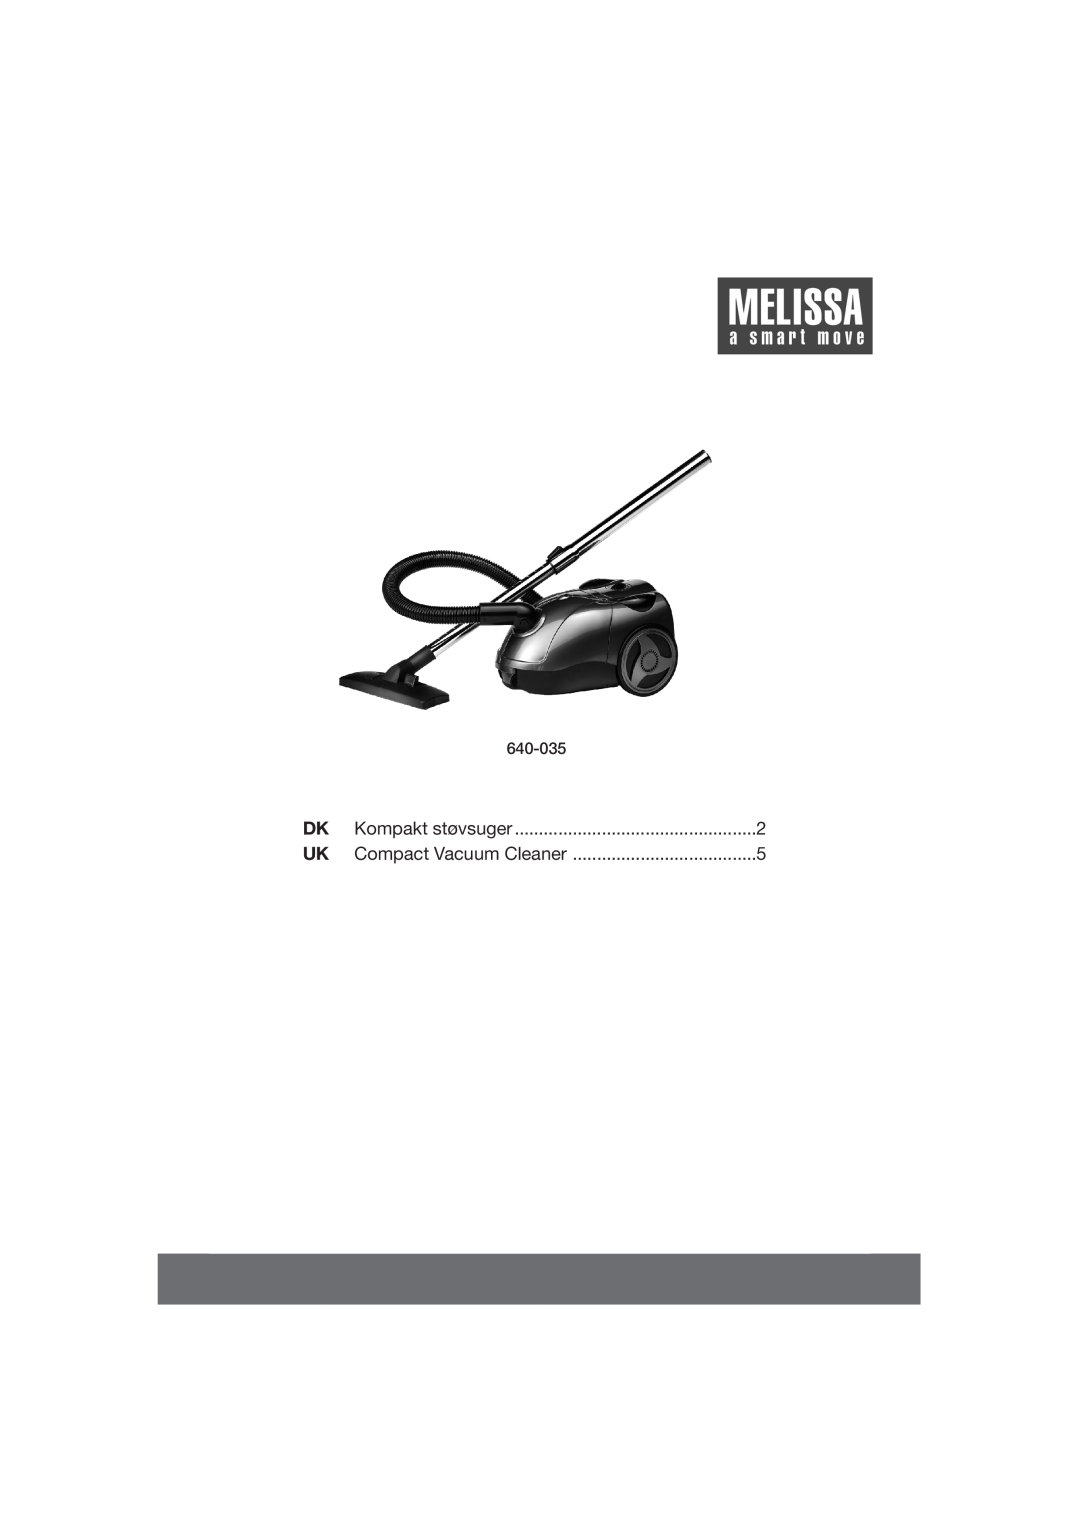 Melissa 640035 manual 640-035, Kompakt støvsuger, Compact Vacuum Cleaner 